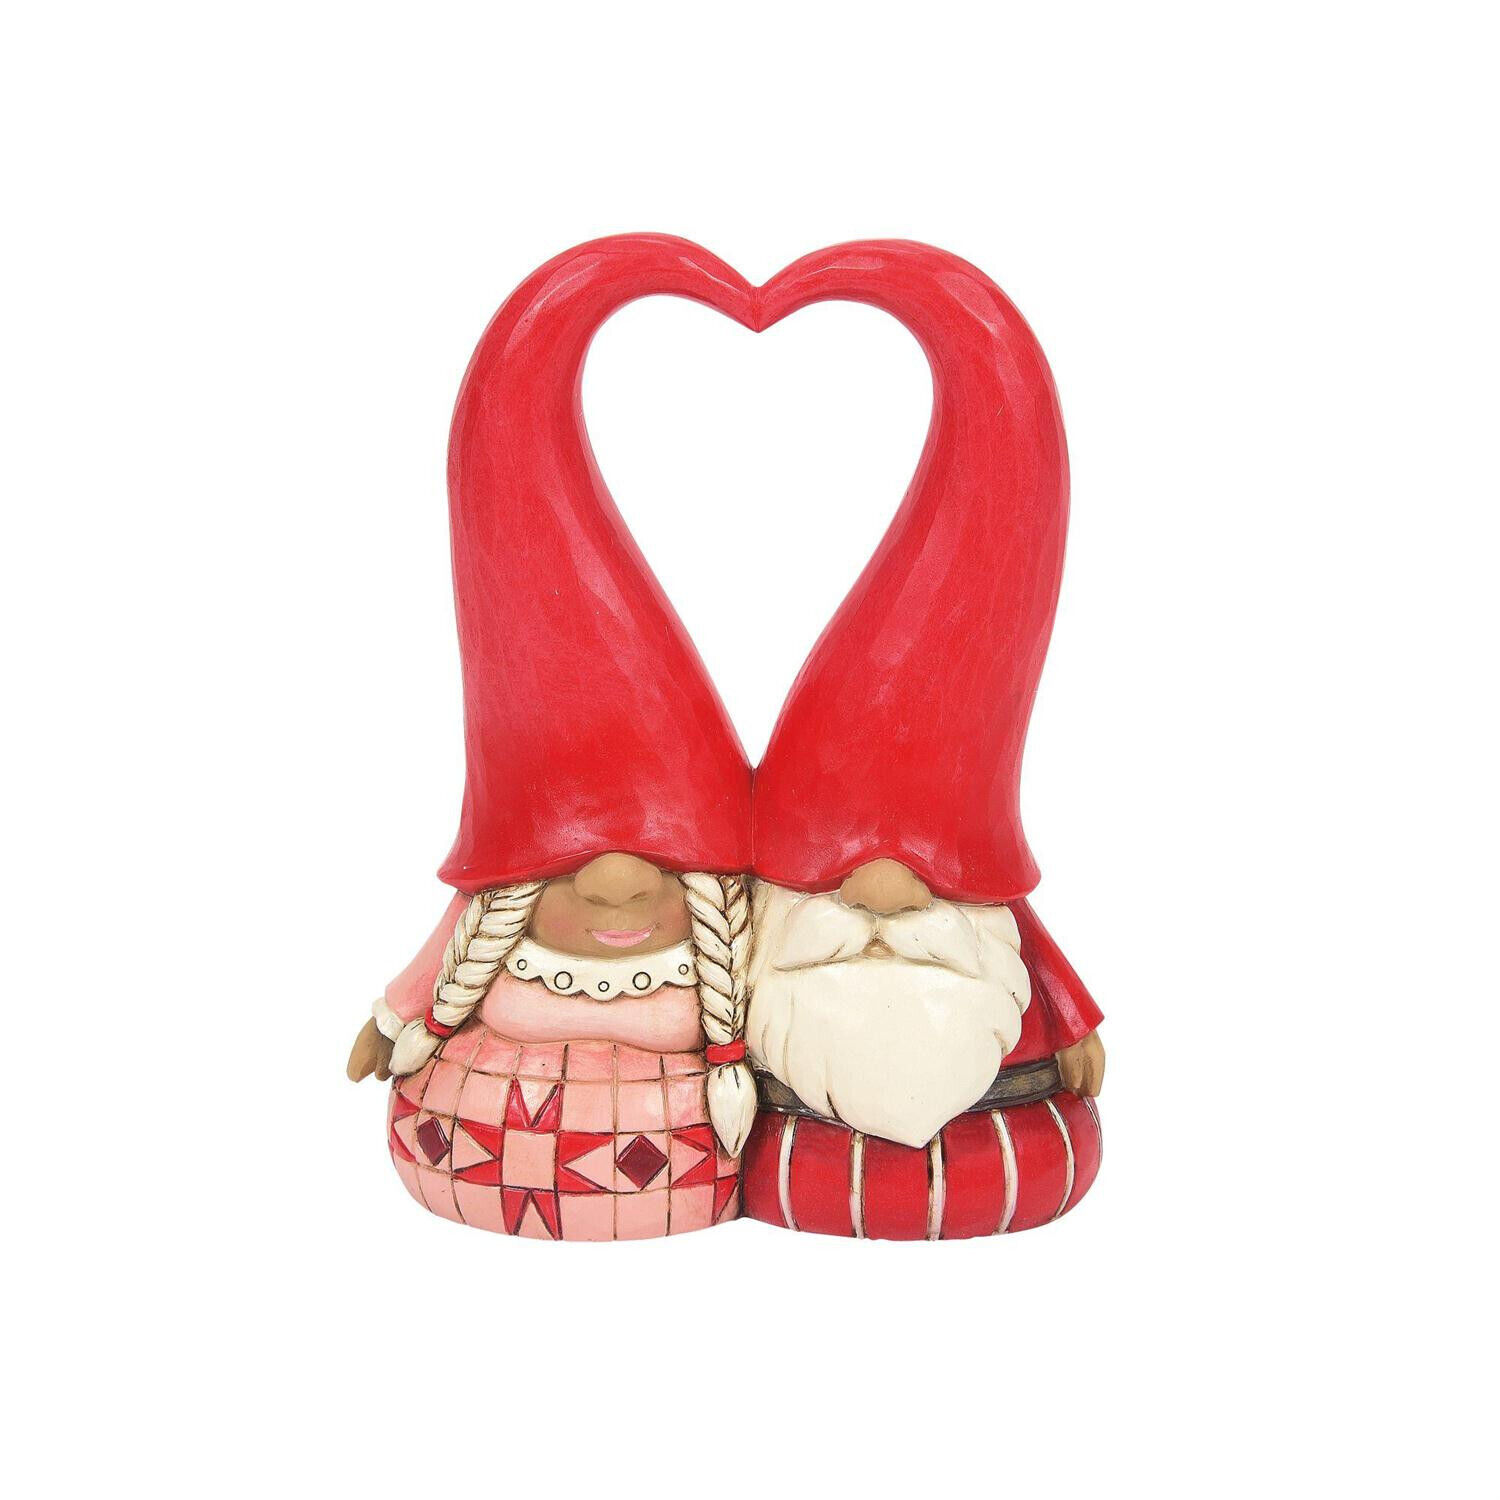 Jim Shore Love Gnome Couple W/Heart Hat Figurine 4 Inch